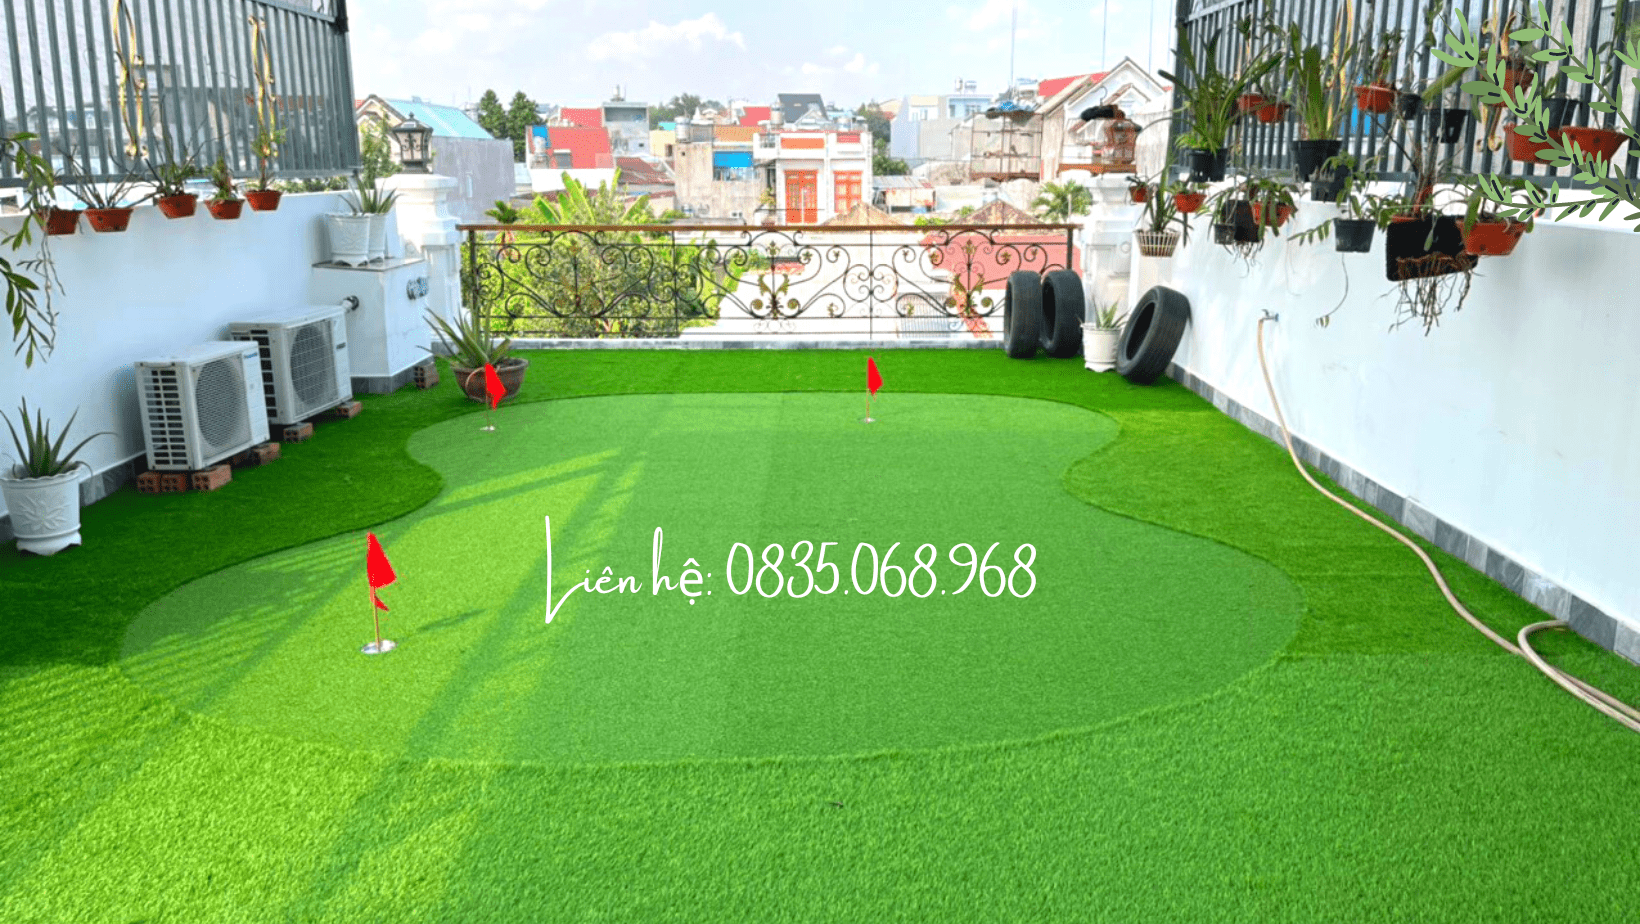 Sử dụng cỏ nhân tạo cho sân golf như thế nào